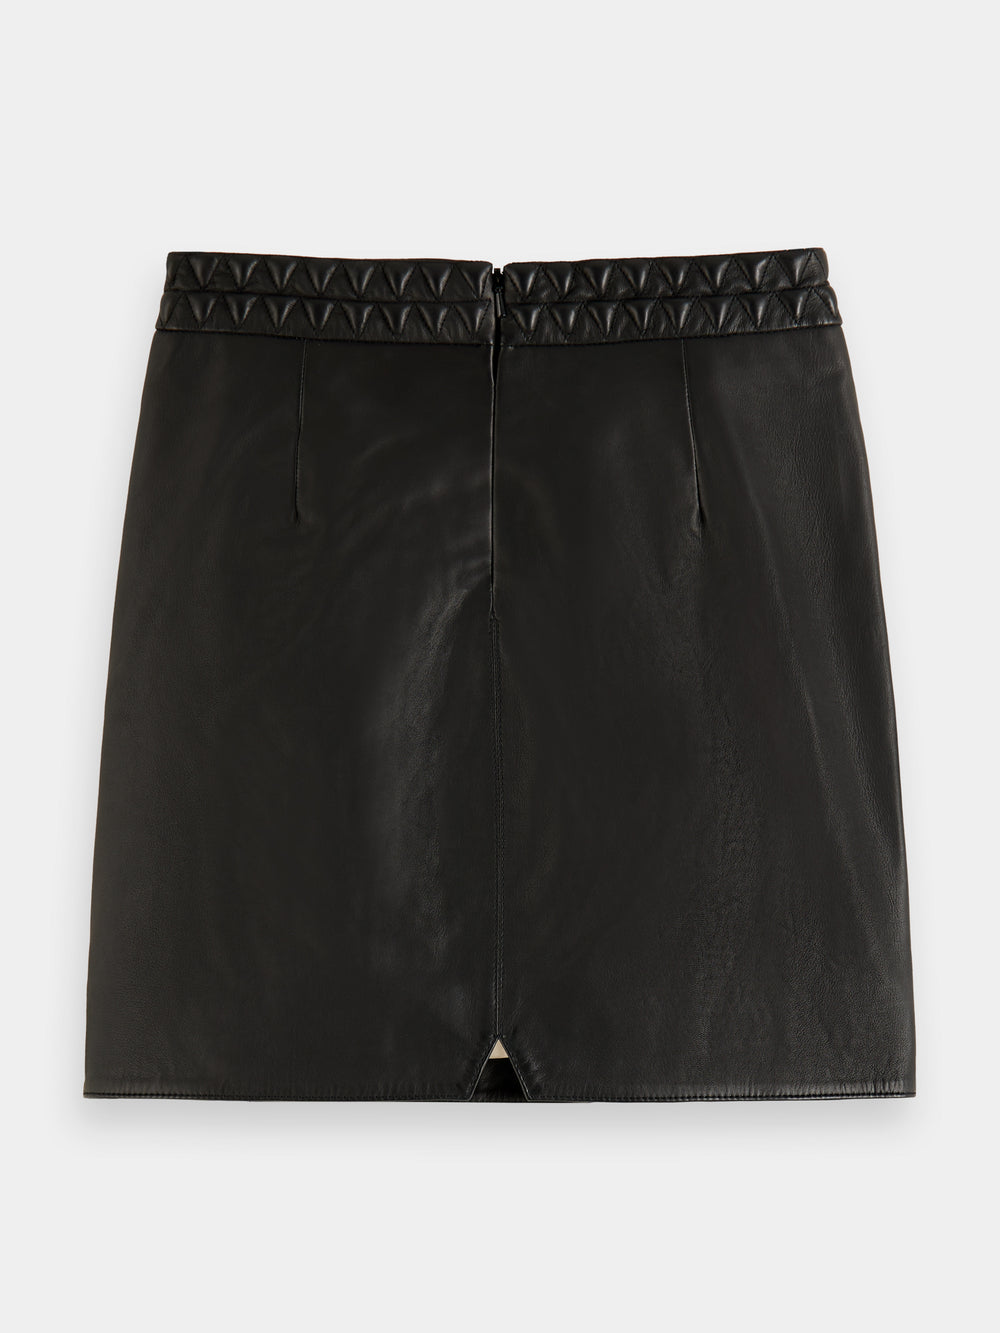 Leather mini skirt - Scotch & Soda NZ